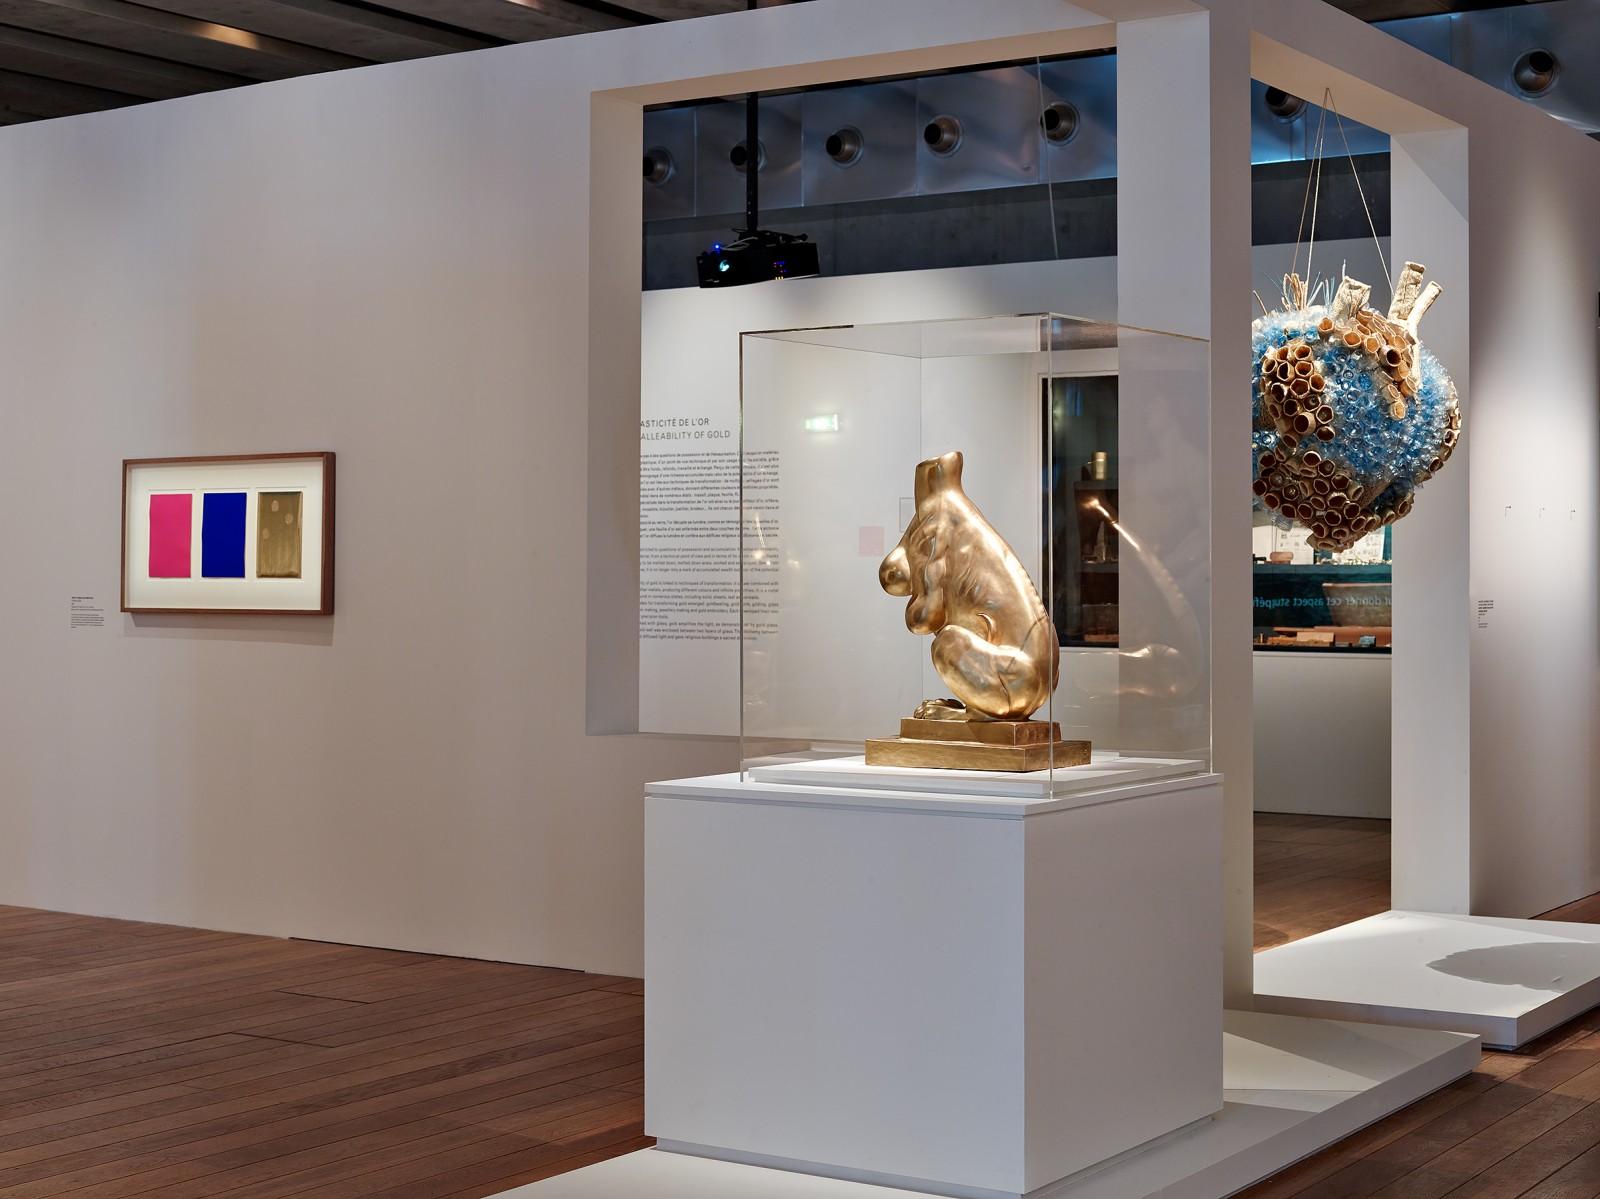 Vue de l'exposition "Or", MUCEM - Musée des civilisations de l'Europe et de la Méditerranée, Marseille, 2018 (Triptyque de Krefeld)